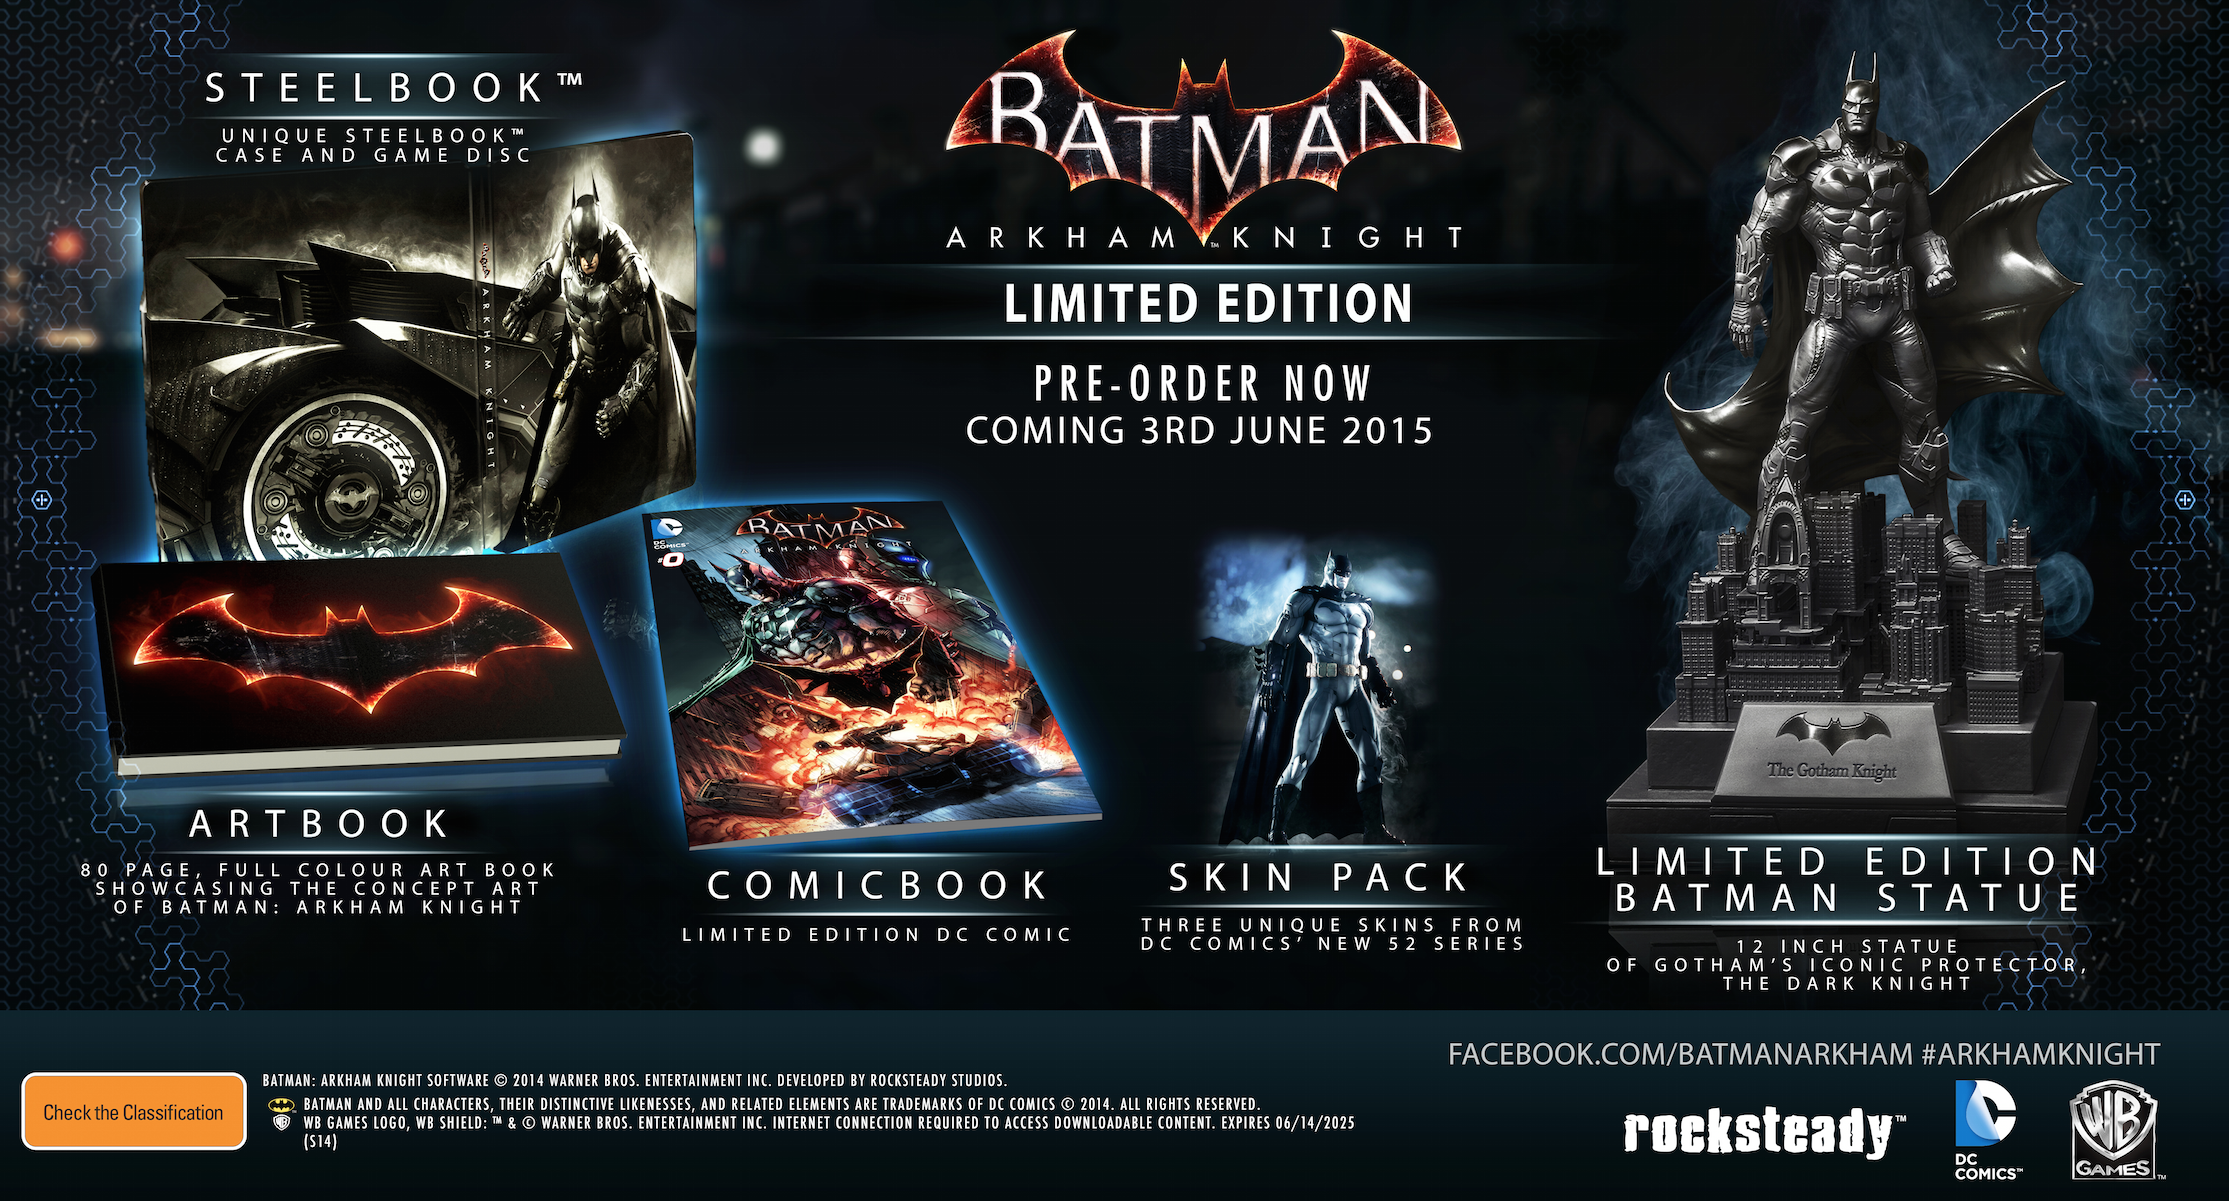 Batman: Arkham Knight Release Date Announced Alongside Two Limited